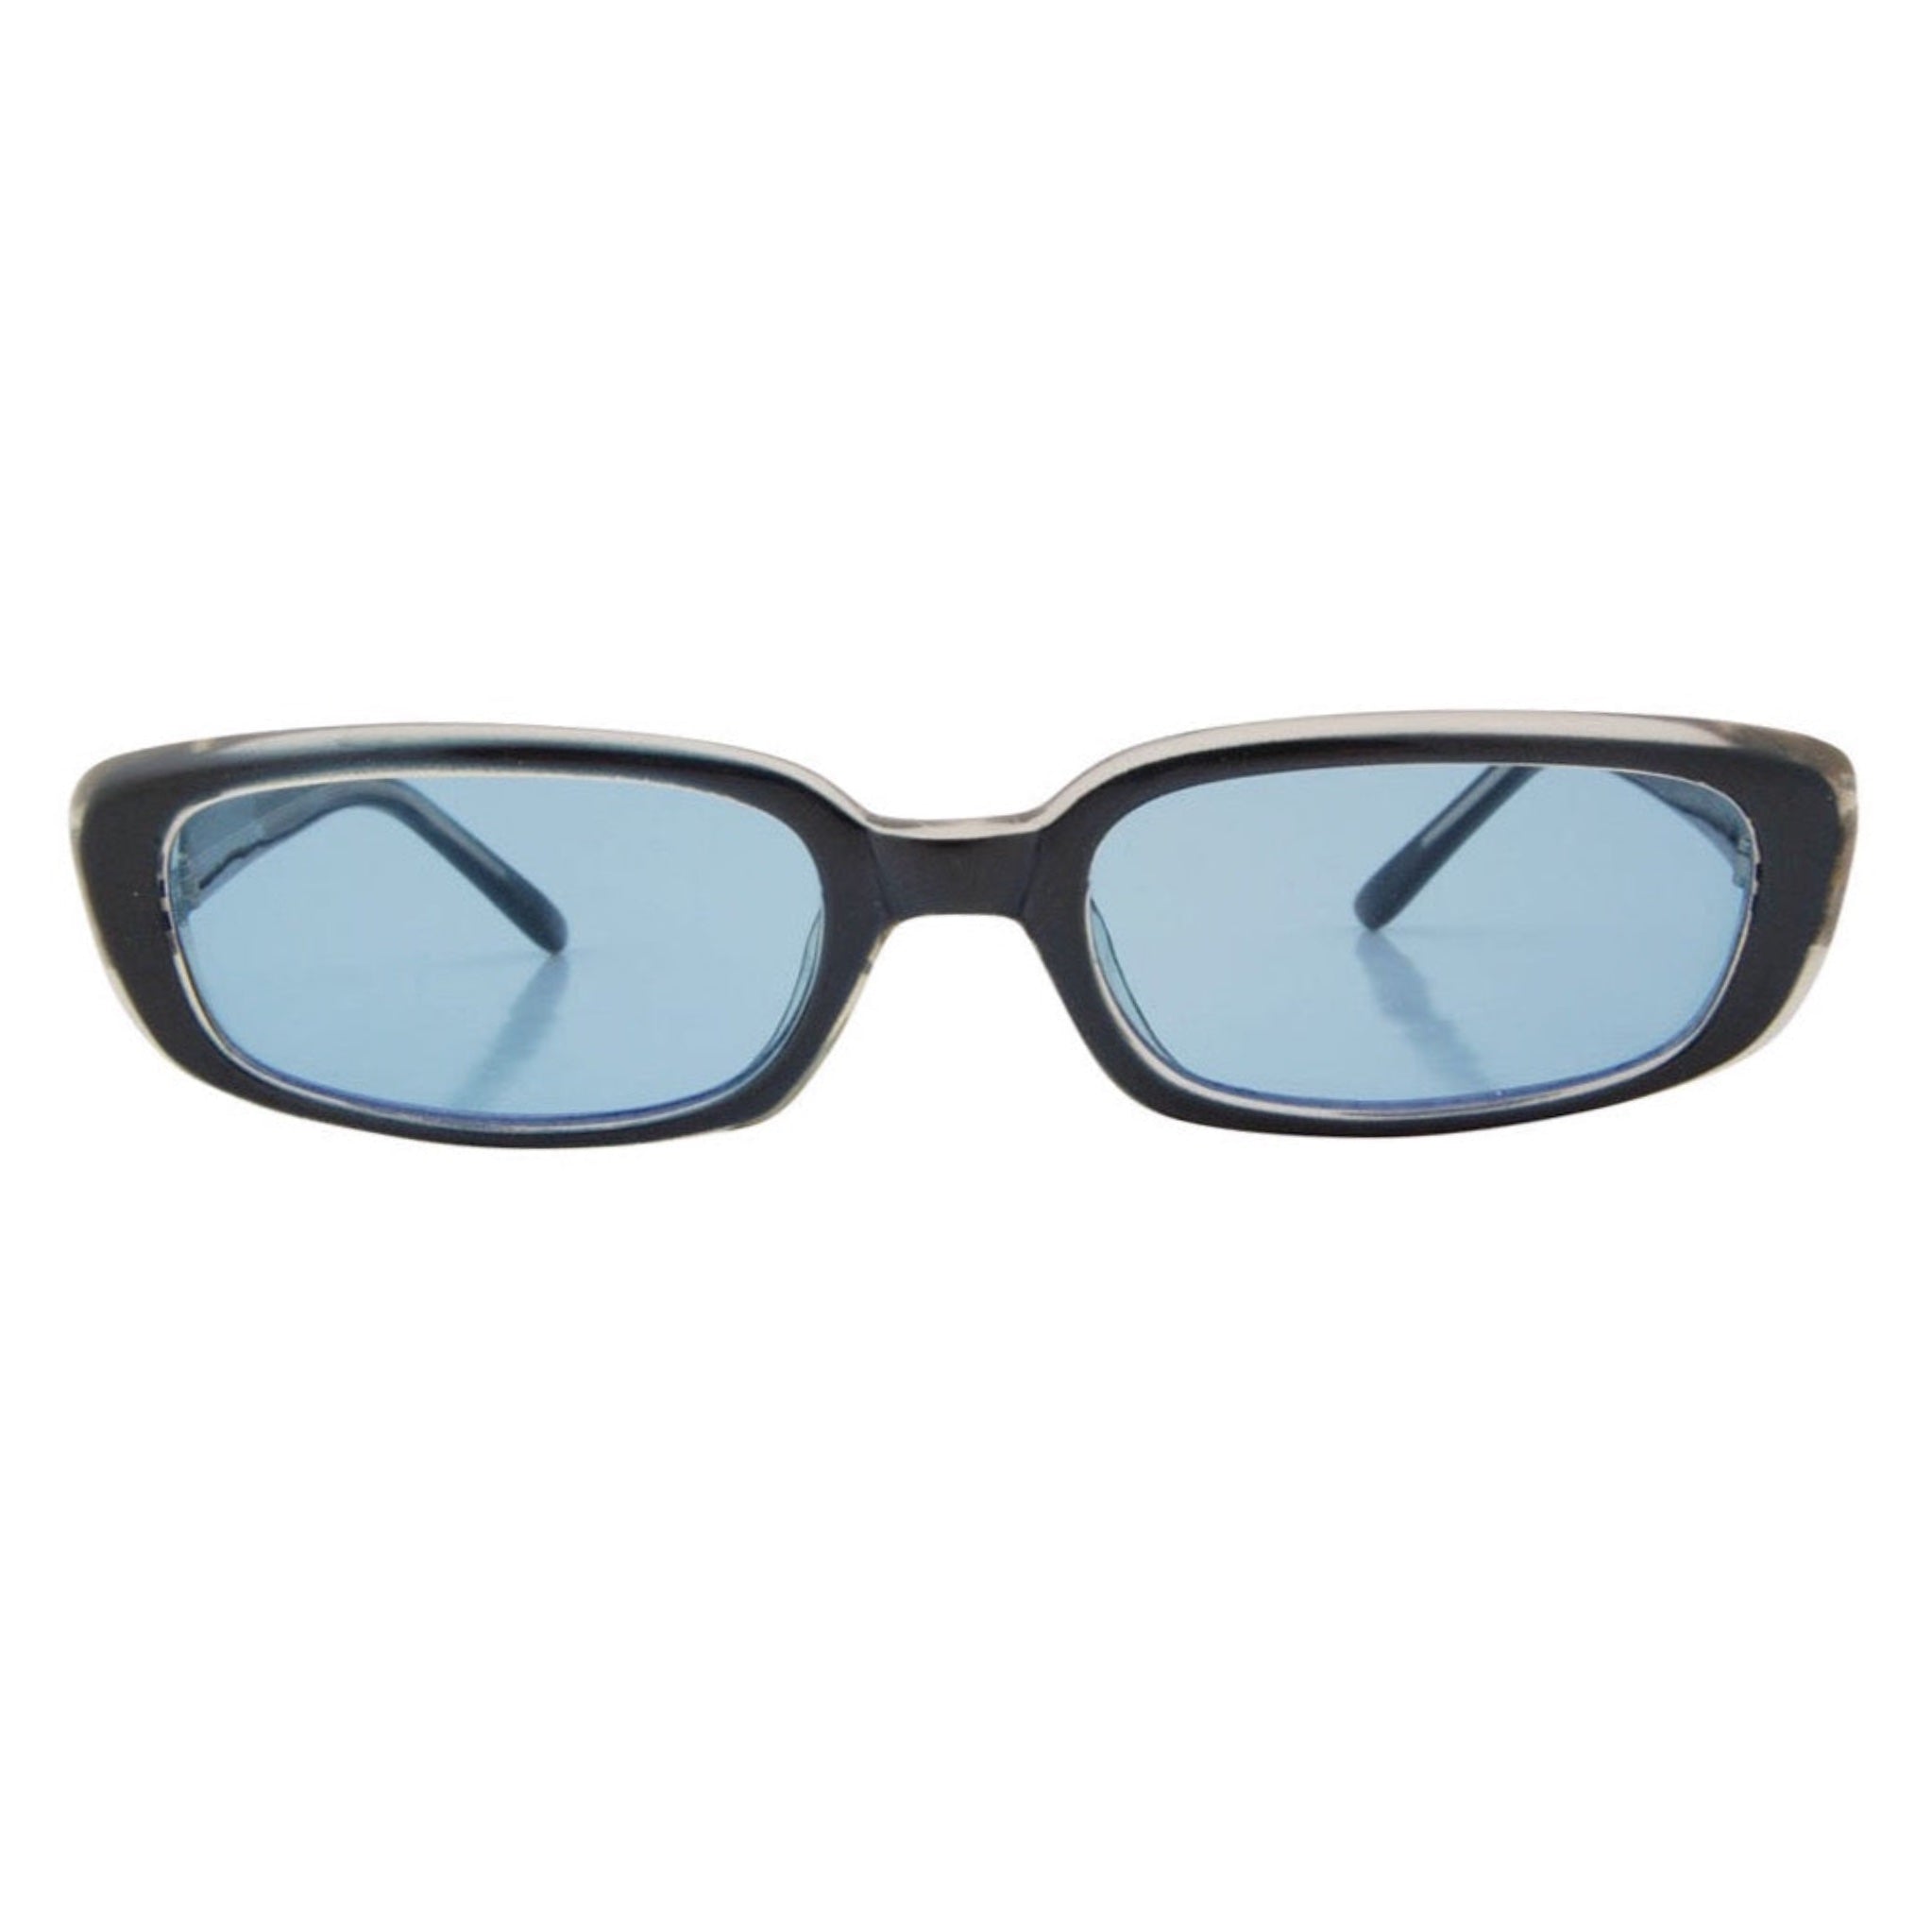 PAR-TEASE Blue Square Sunglasses-Giant Vintage Eyewear